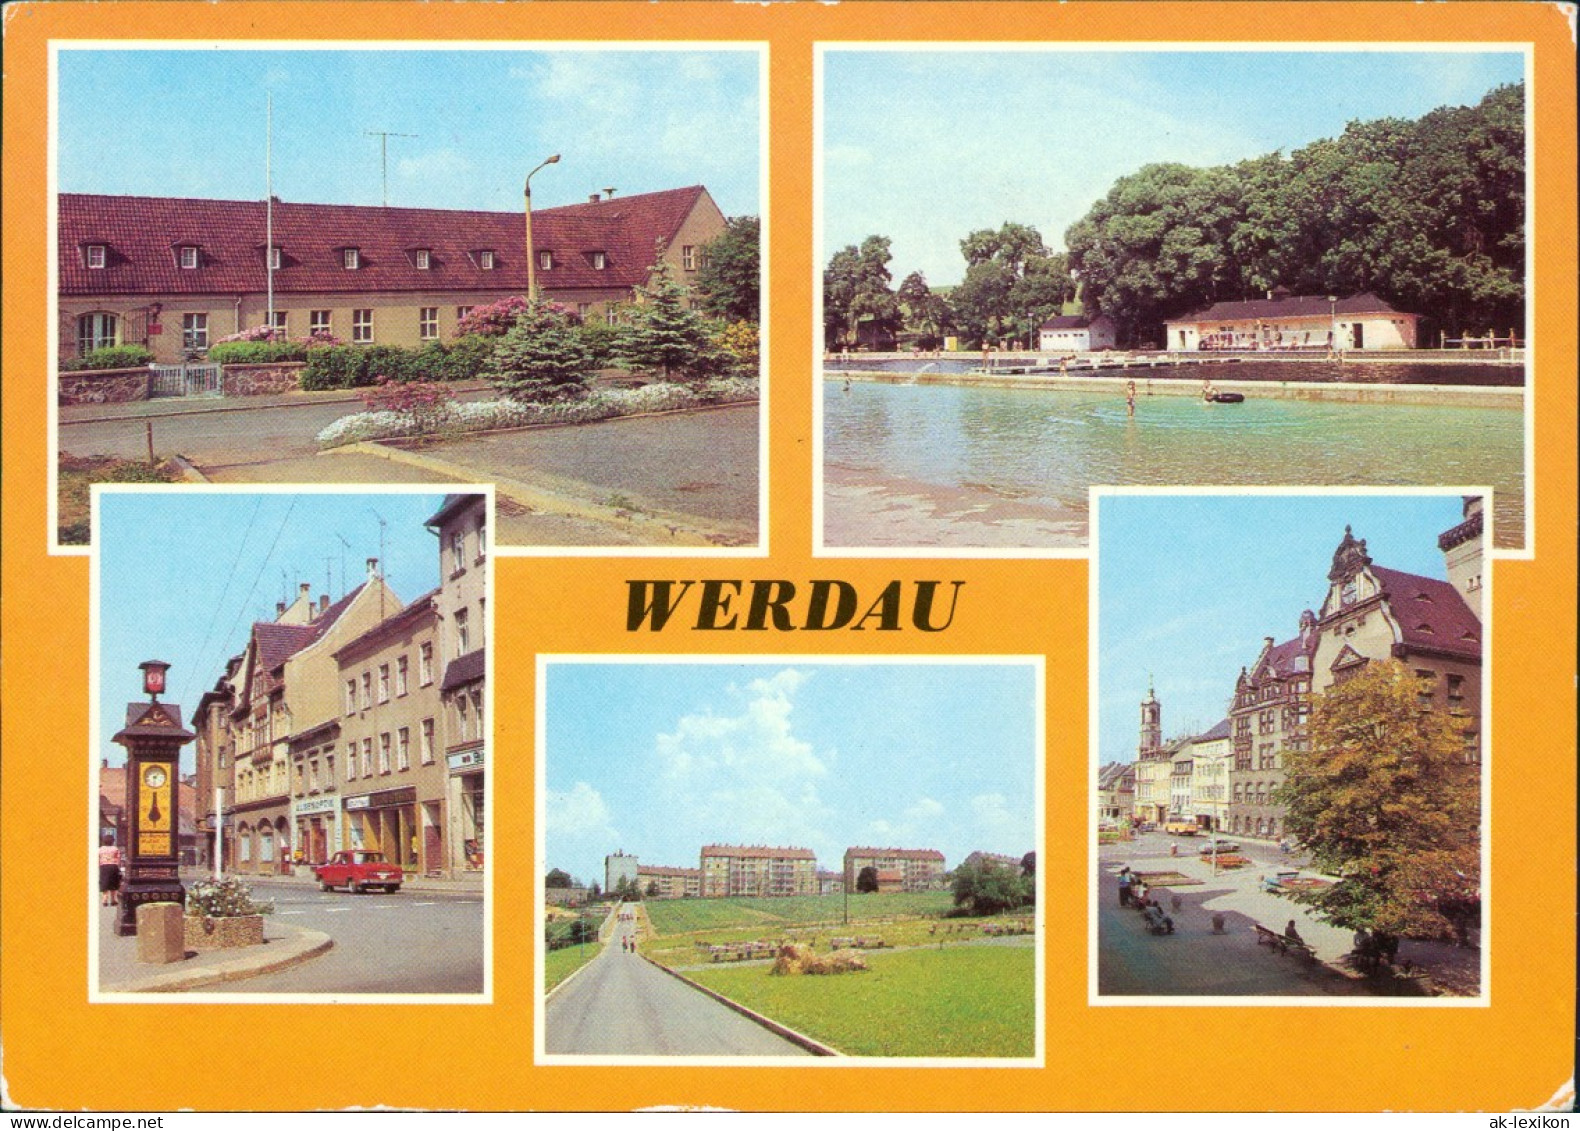 Werdau Sportschule, Bad, August-Bebel-Straße, Neubauten, Markt 1981 - Werdau